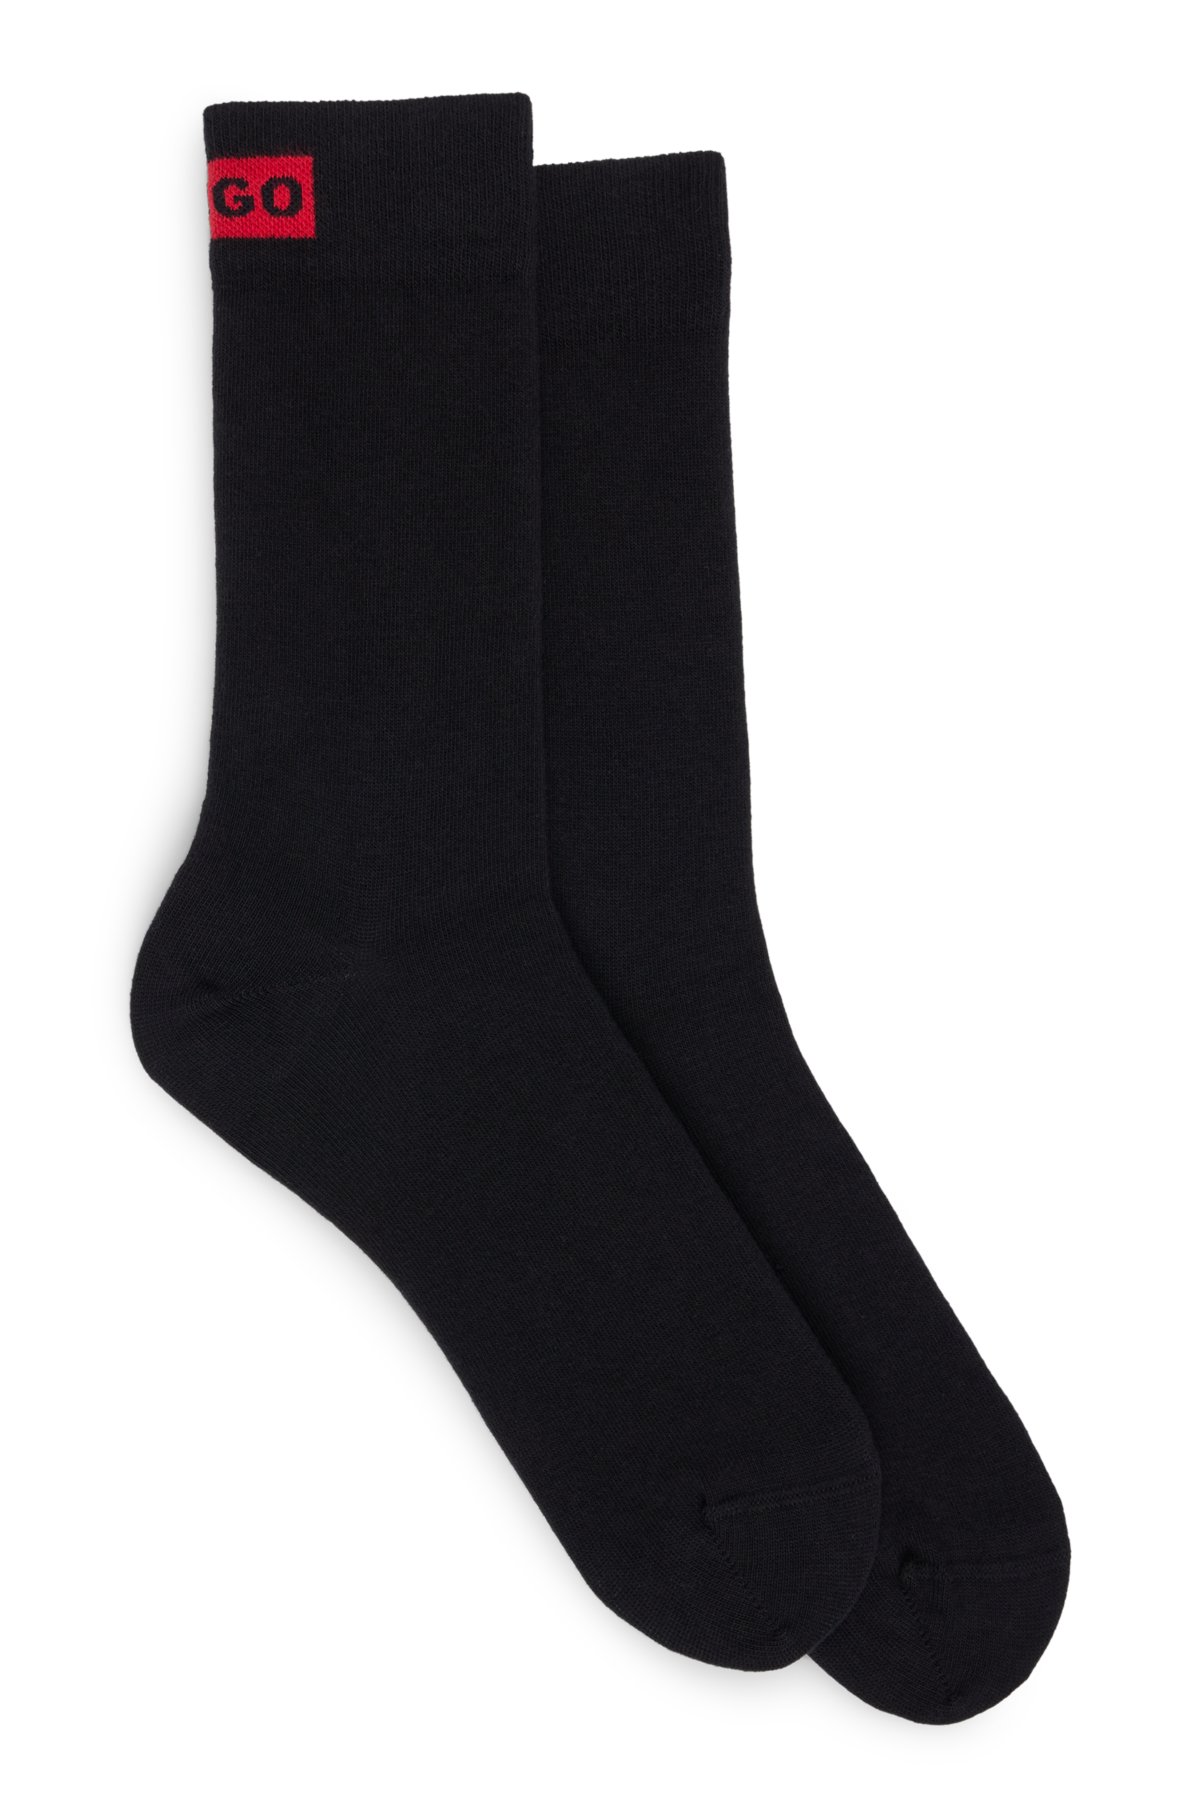 Two-pack of regular-length socks with logo detail, Black